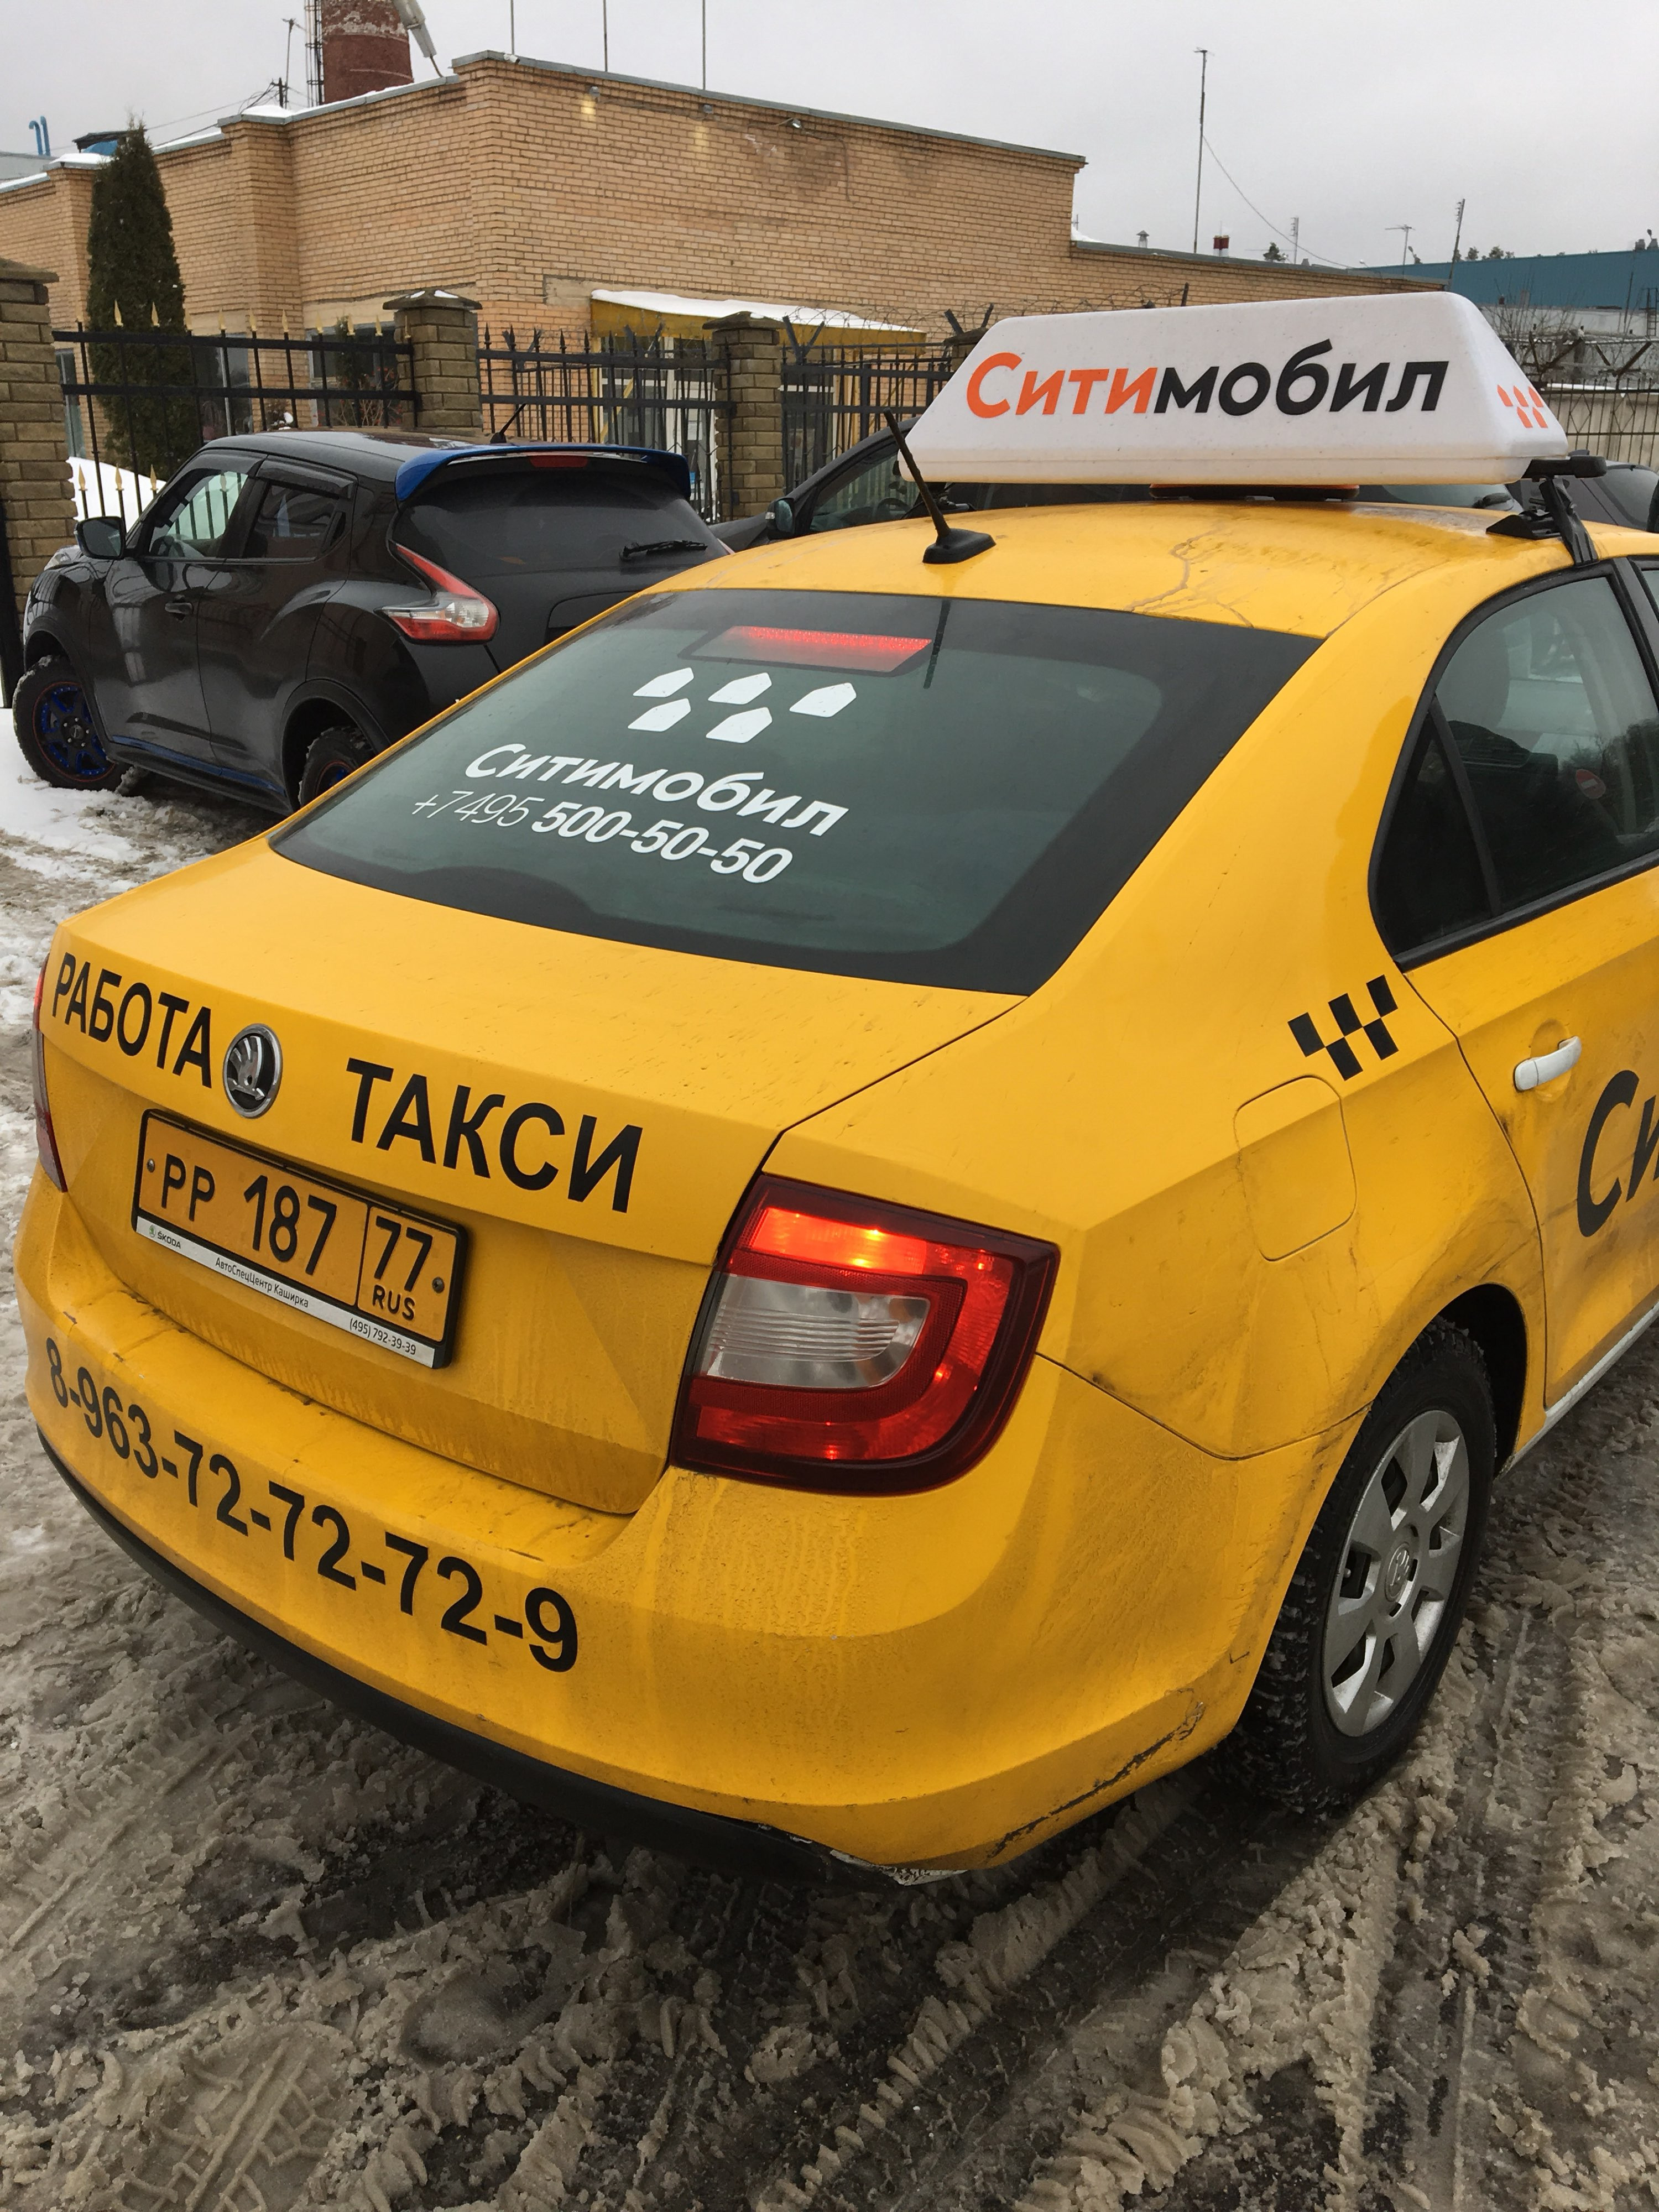 Заказать такси сити. Такси. Ситимобил. Номер такси Сити мобил. Сити мобиль такси номер.